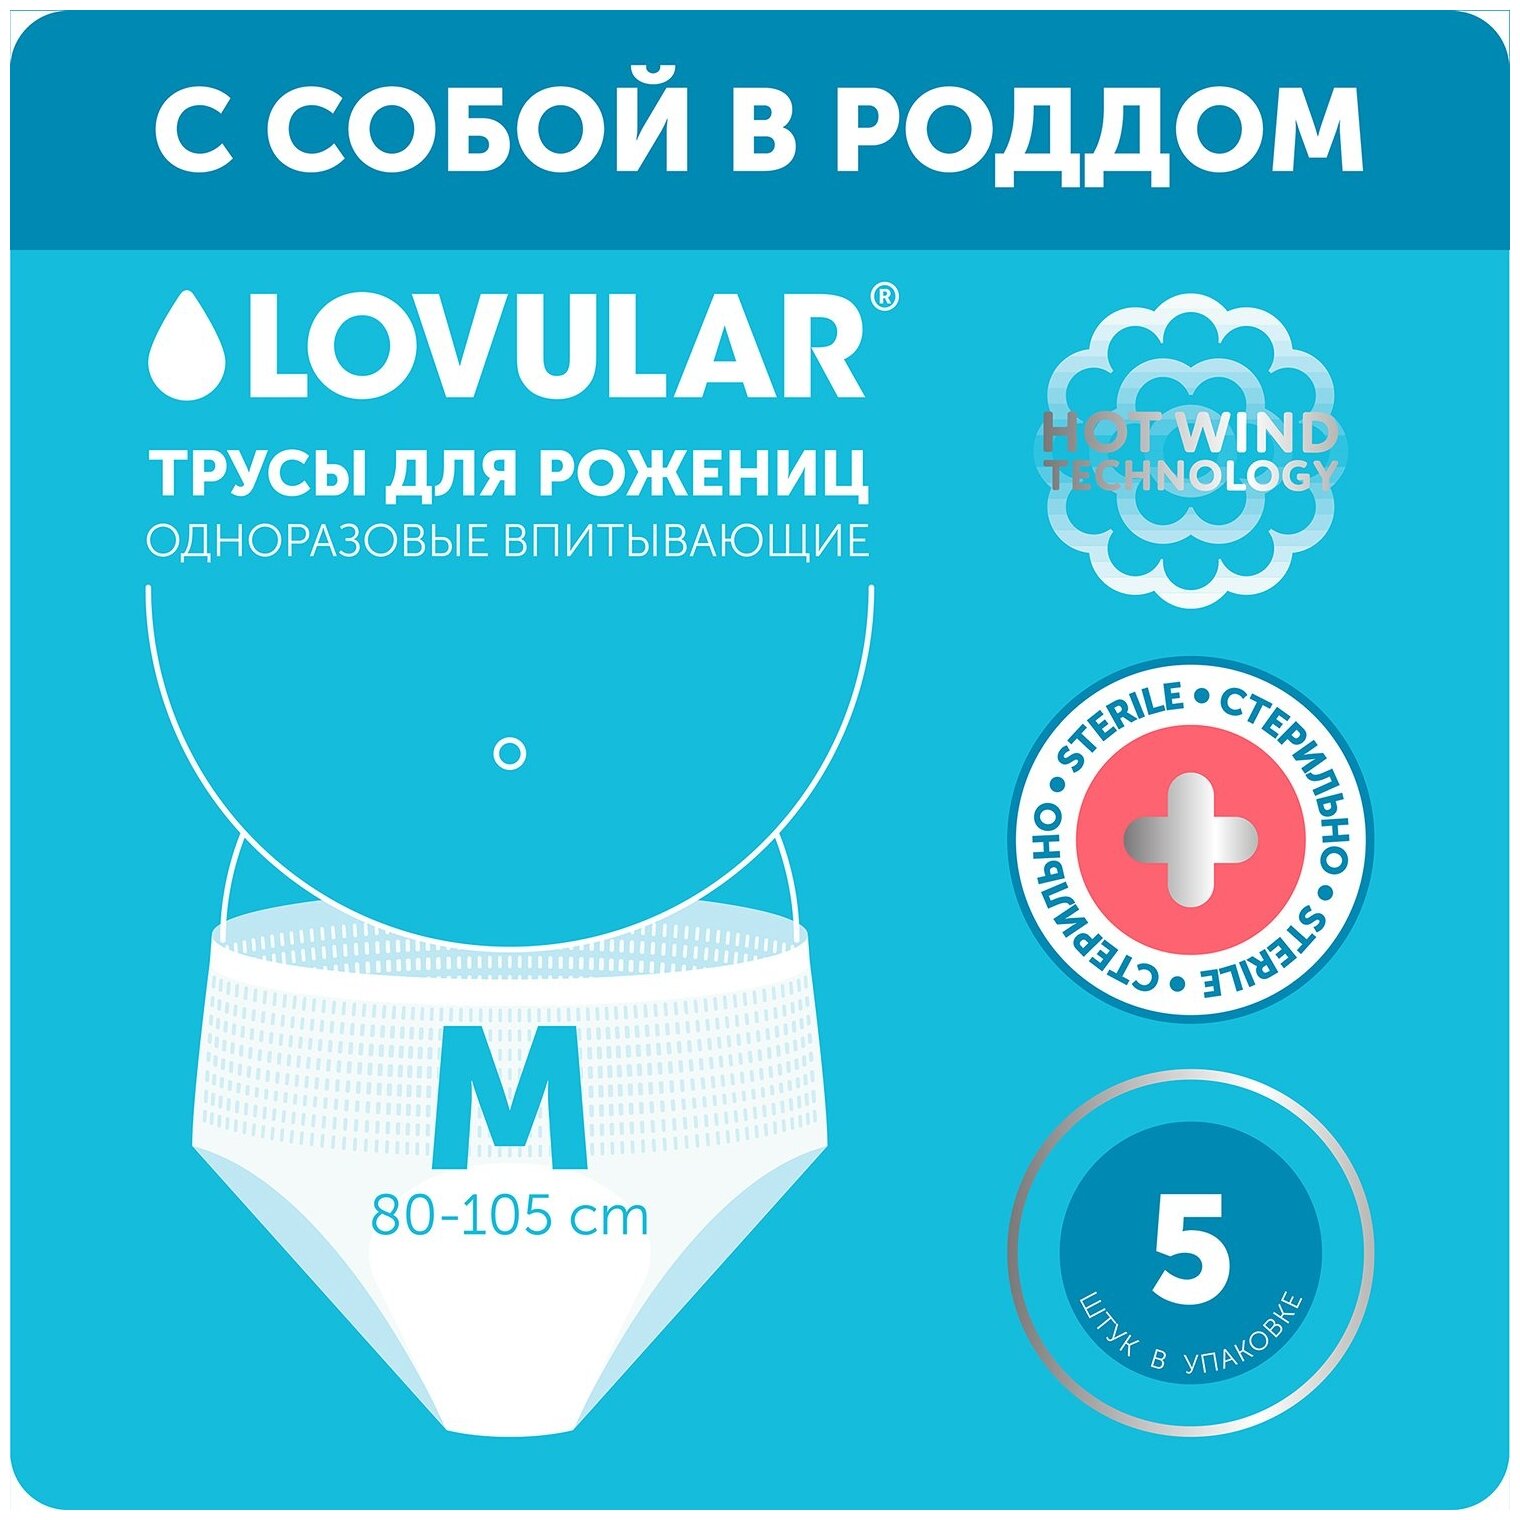 Lovular Стерильные трусы для рожениц одноразовые впитывающие менструальные Hot Wind 5 шт. M, Белый